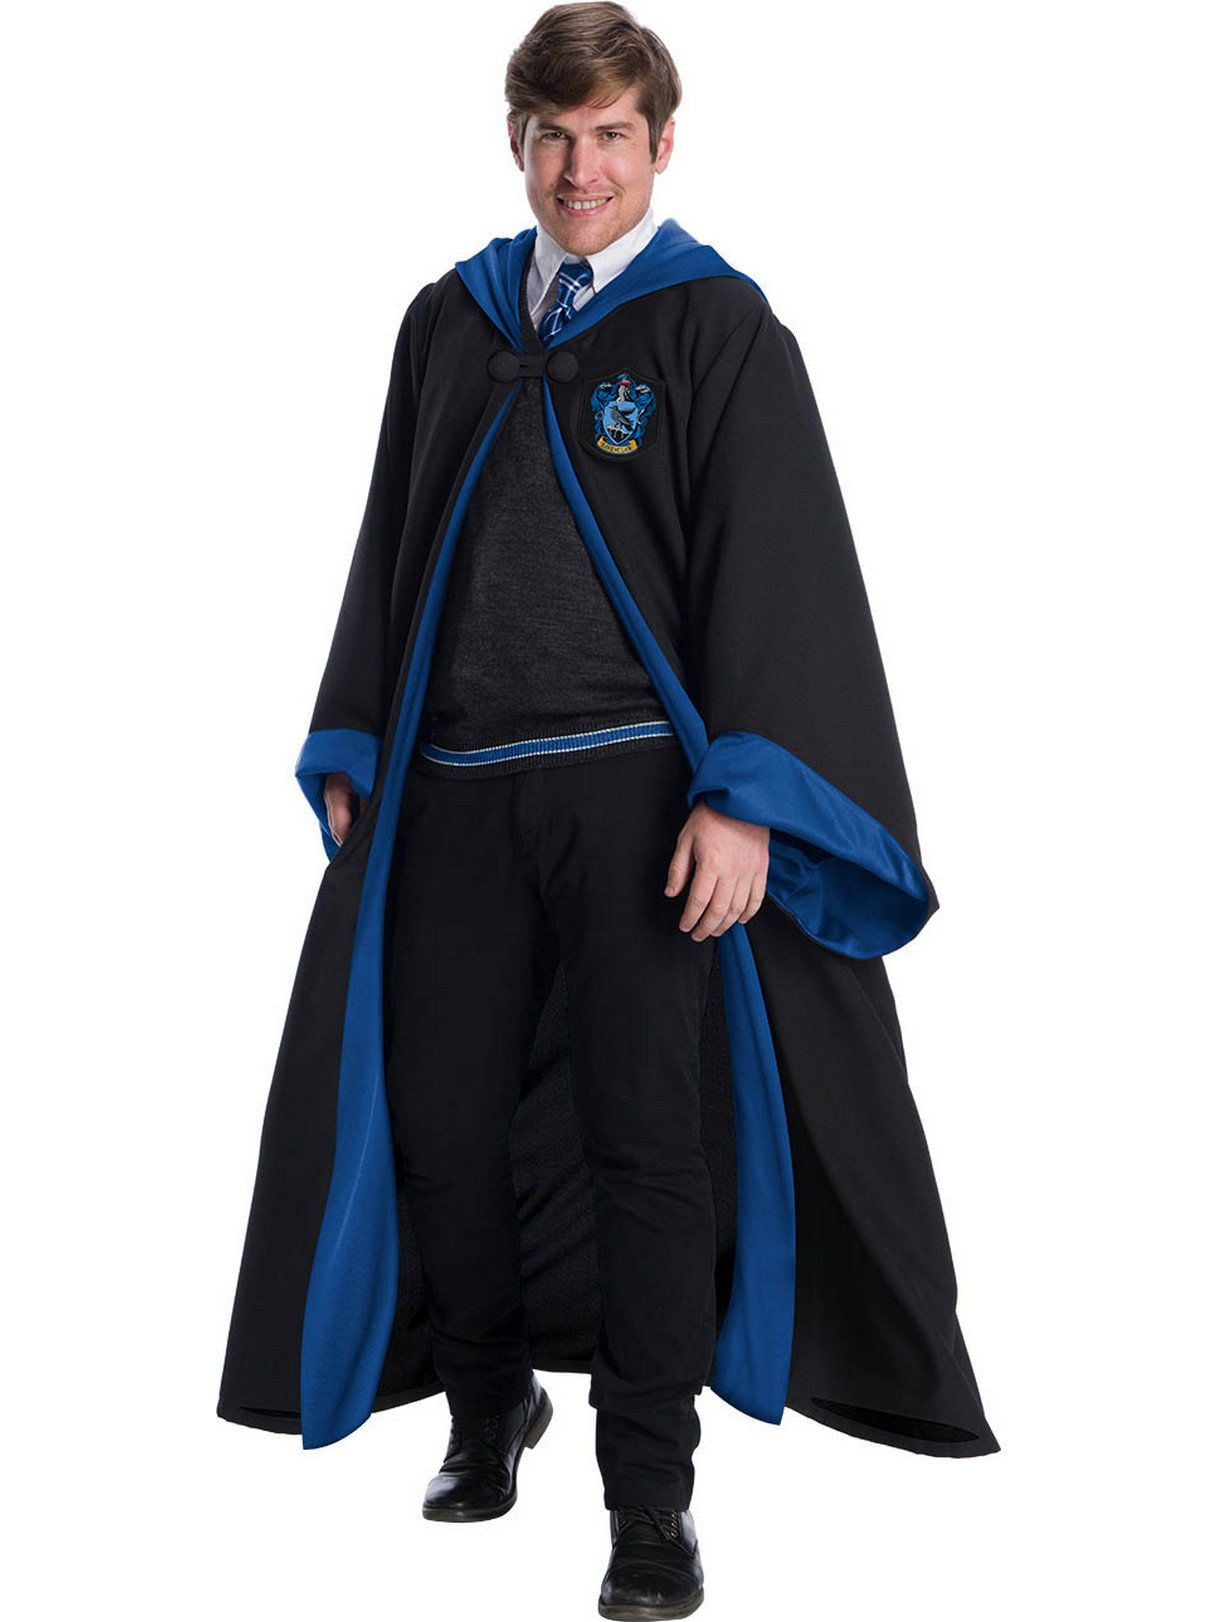 Harry Potter Ravenclaw Costume for Men - Walmart.com